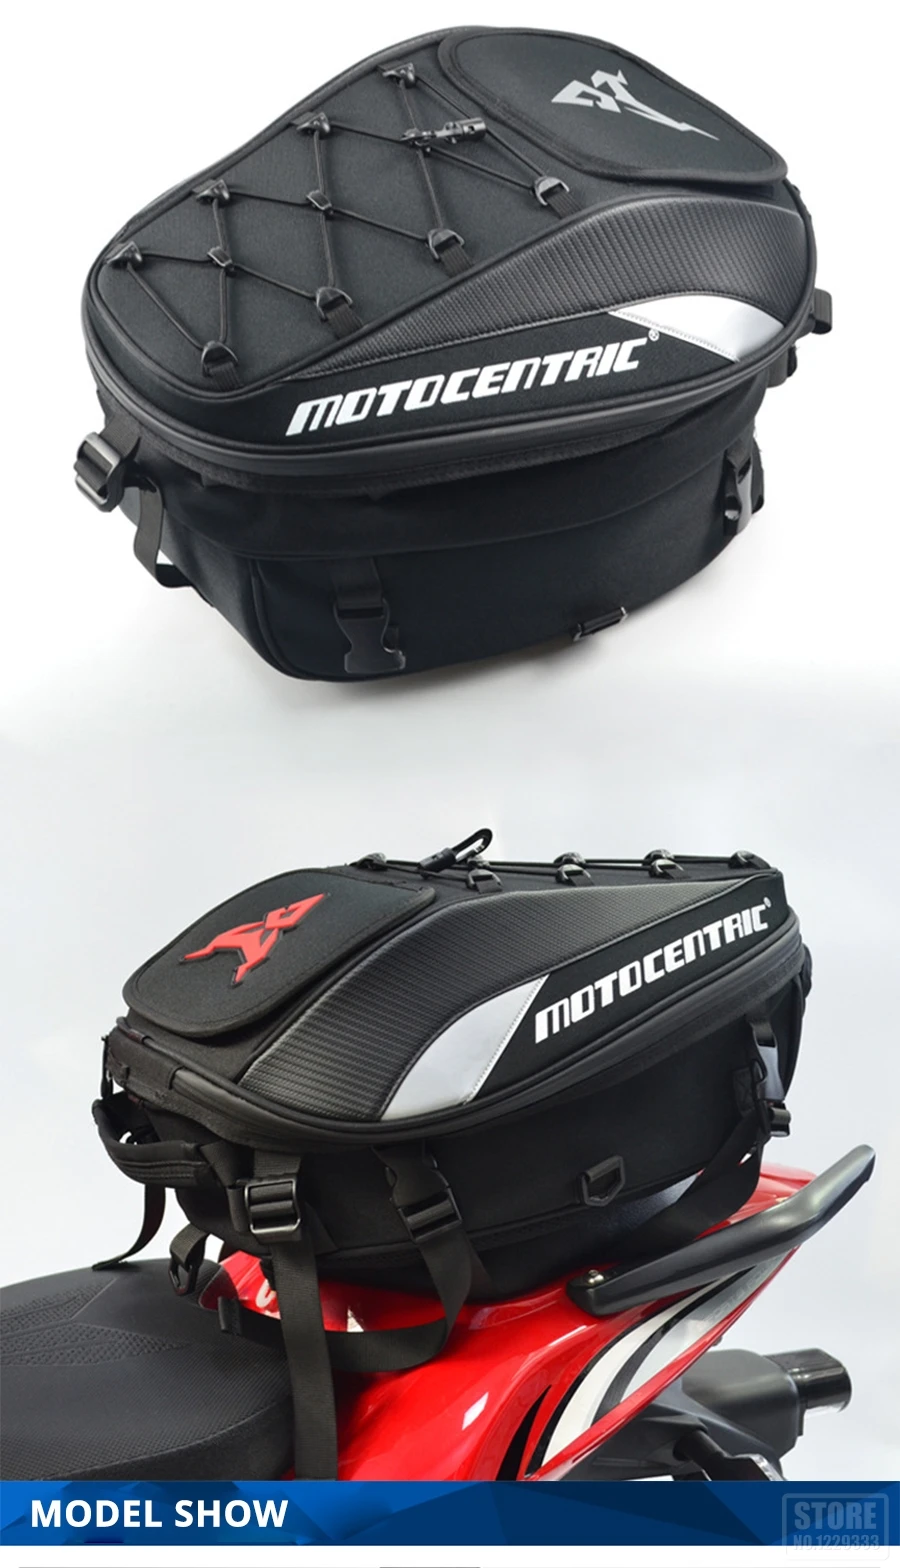 MOTOCENTRIC Motorcycle Bag Waterproof Motorcycle Tank Bag 